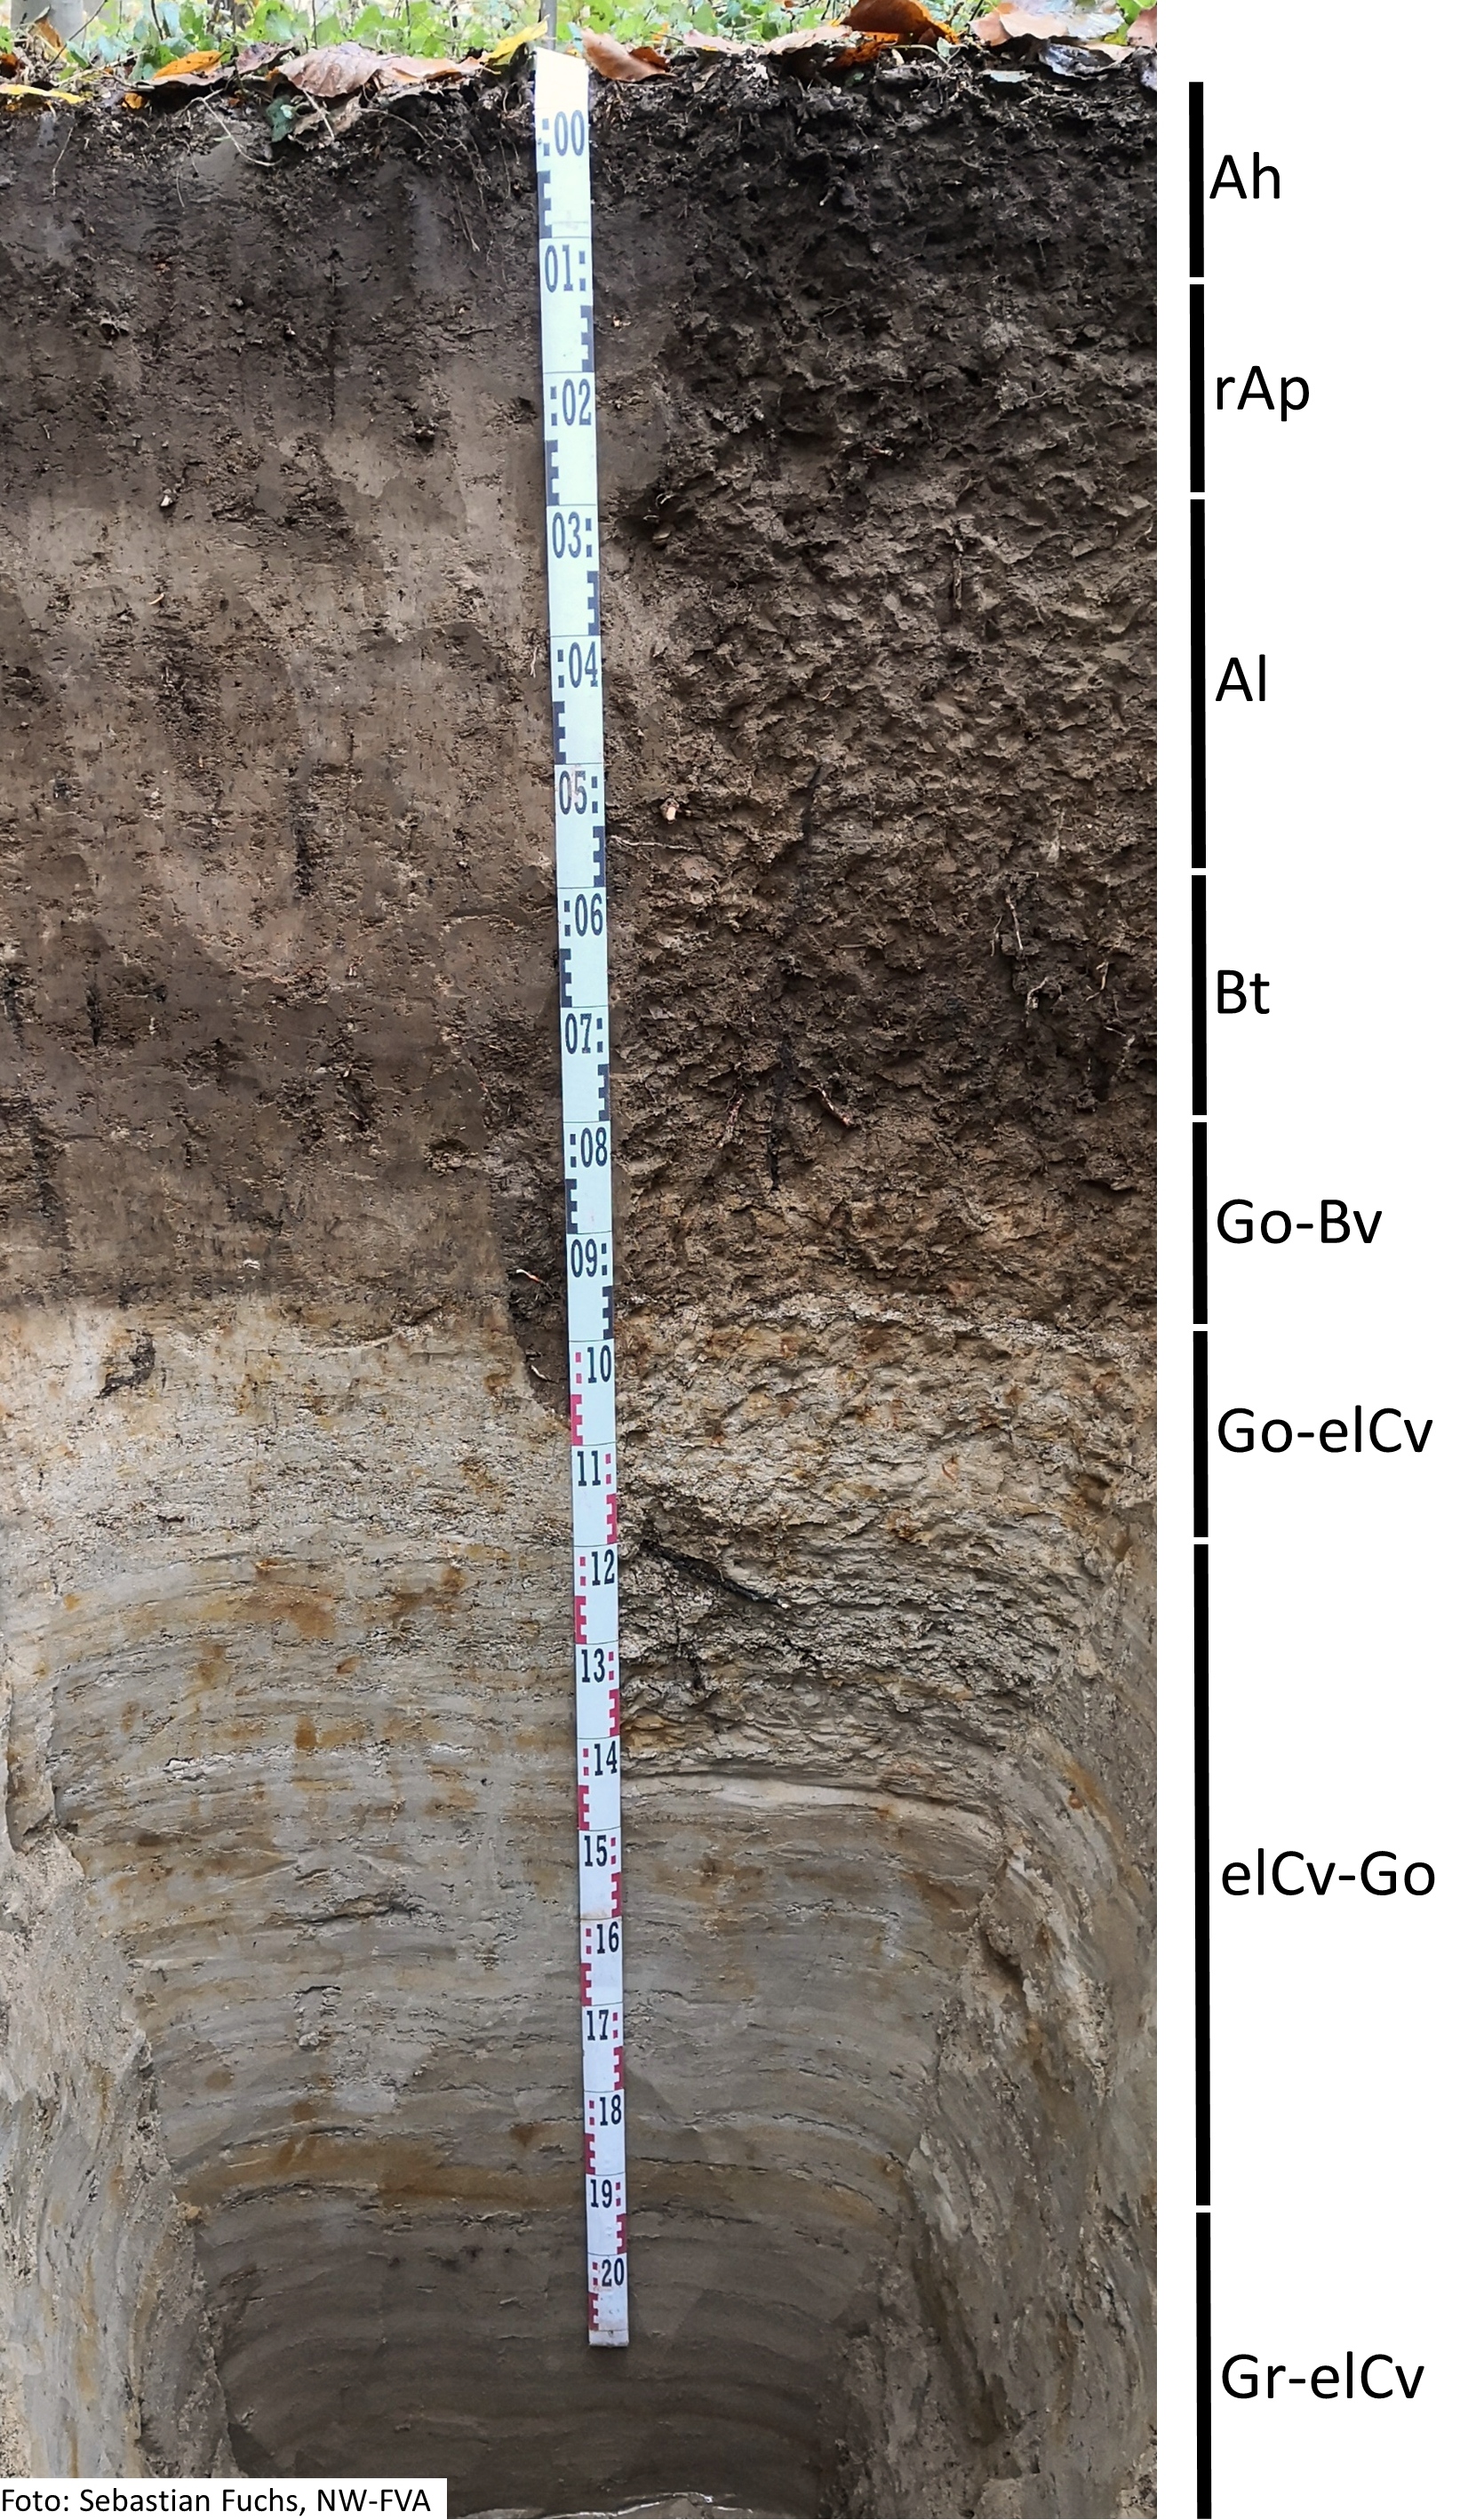 Das Foto zeigt einen senkrechten Schnitt durch den Boden der Untersuchungsfläche. Das Bodenprofil enthält folgende Bodenhorizonte: Ah, rAp, AI, Bt, Go-Bv, Go-elCv, elCv-Go, Gr-elCv